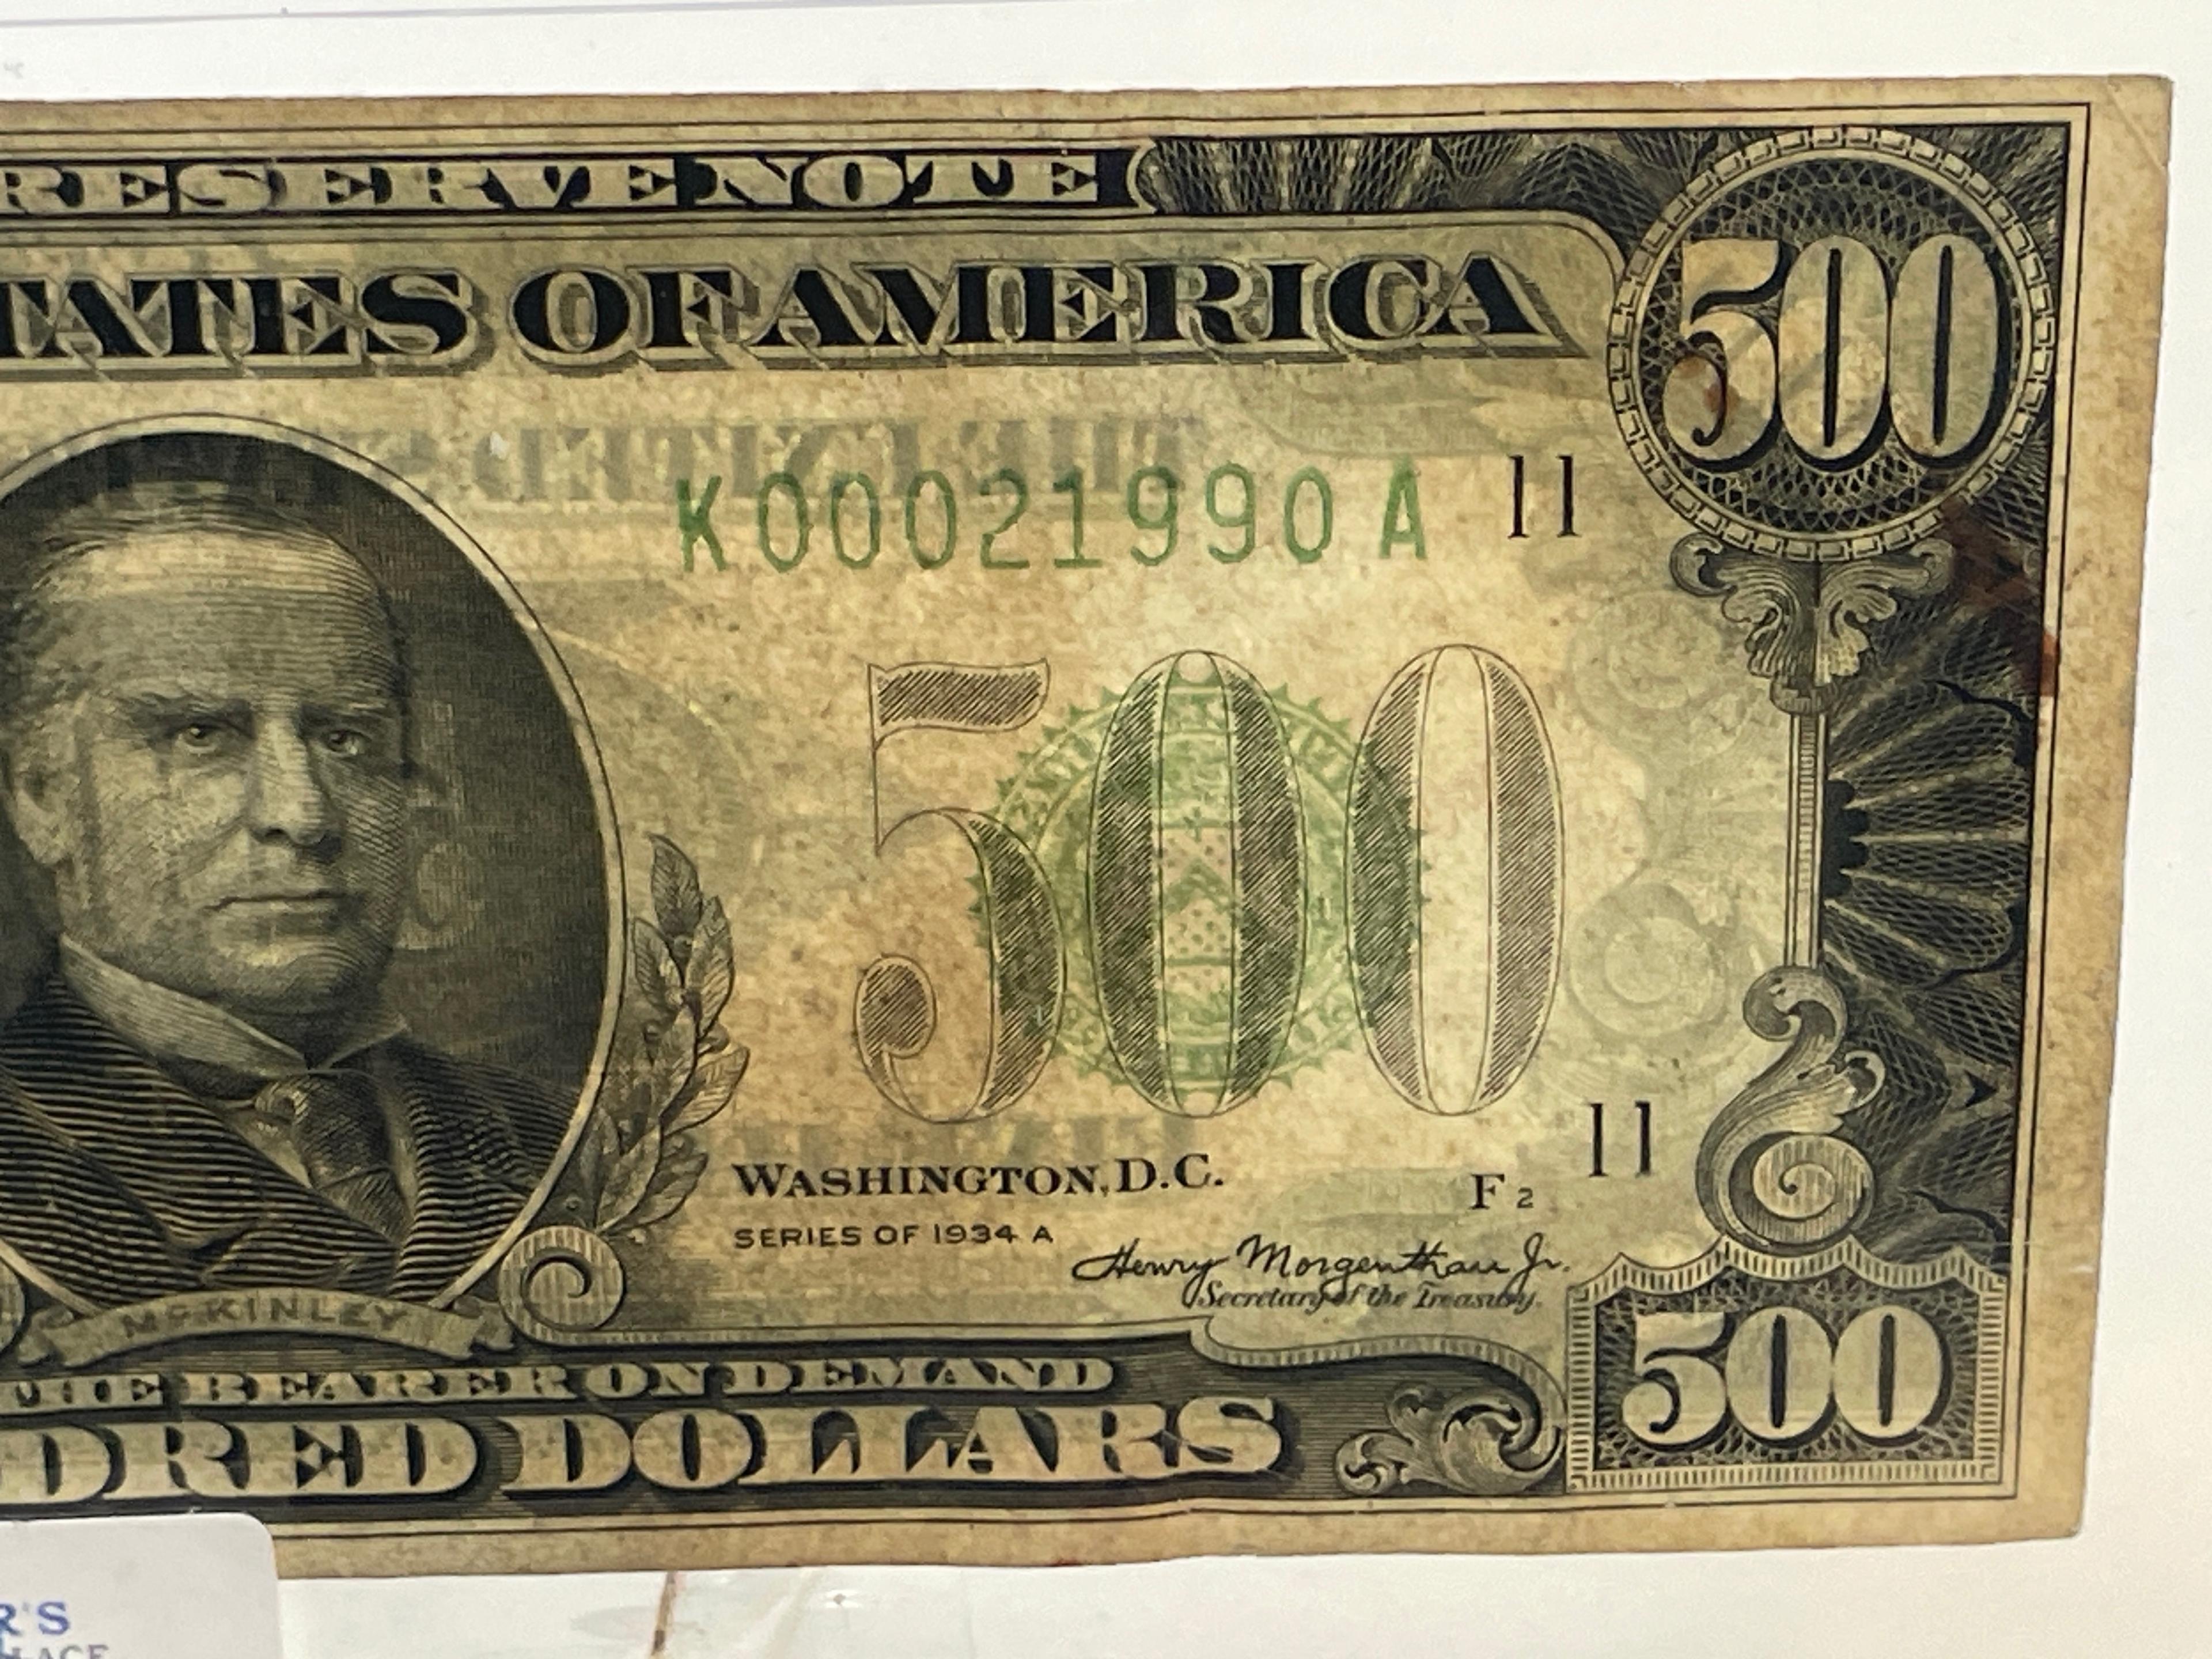 1934 U.S. $500 FEDERAL RESERVE NOTE